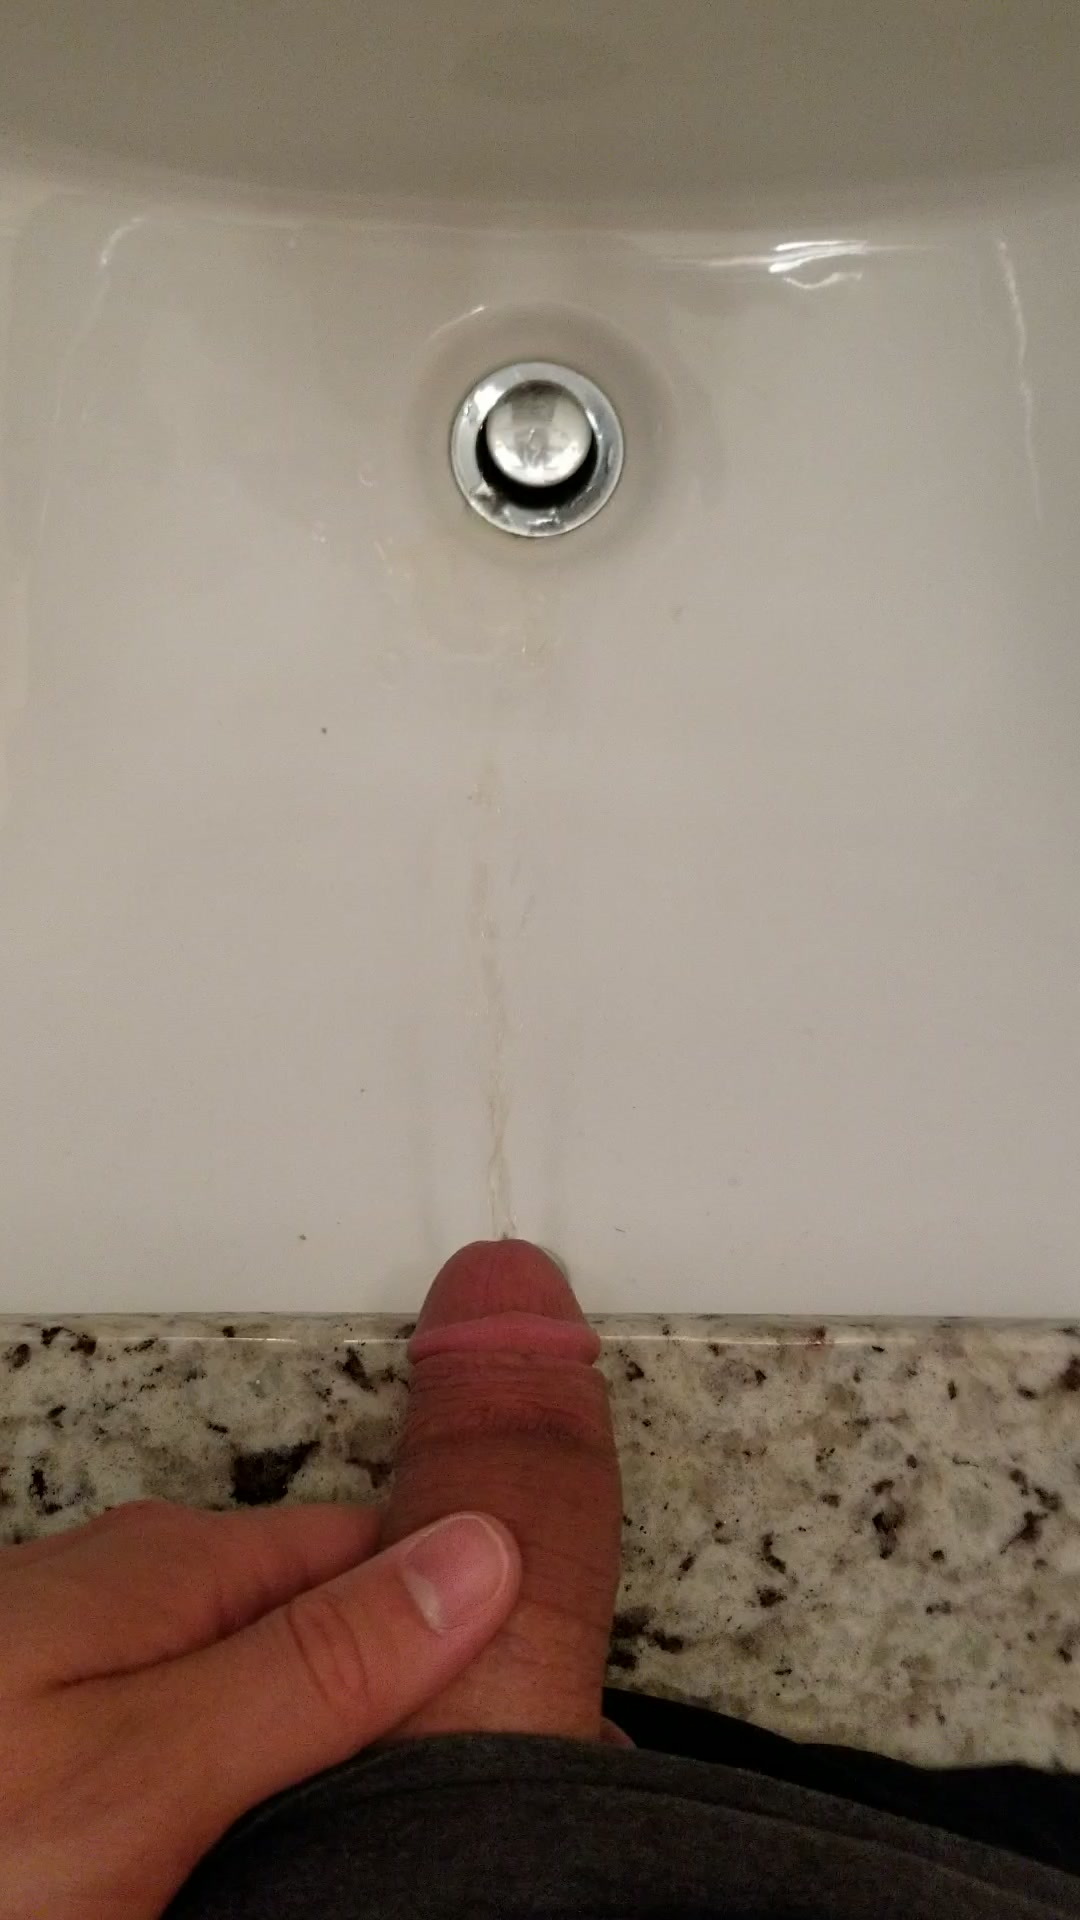 Boy pissing in sink